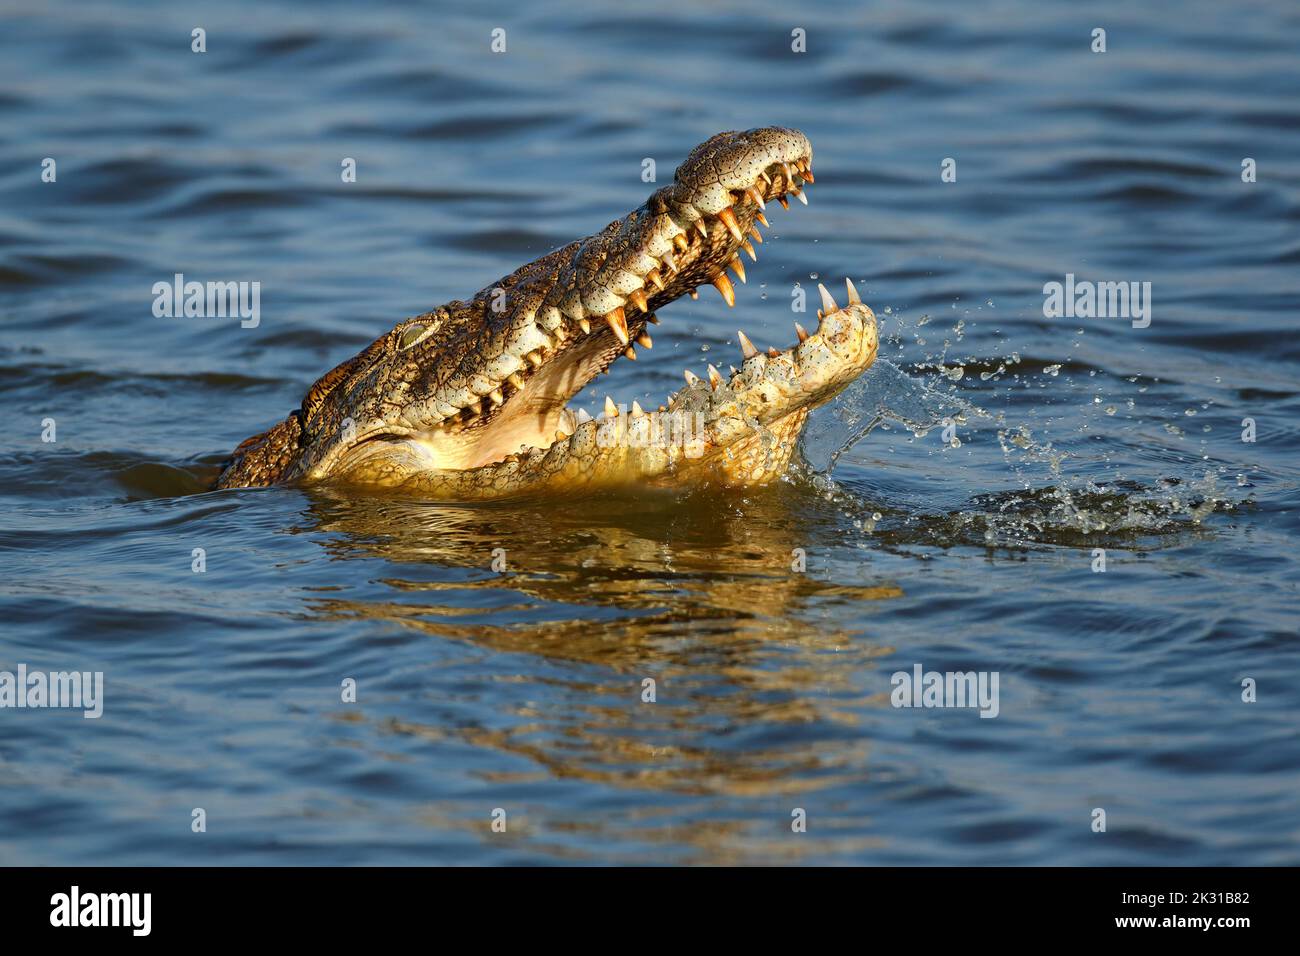 Ritratto di un grande coccodrillo del Nilo (Crocodylus niloticus) con mascelle aperte in acqua, Parco Nazionale di Kruger, Sudafrica Foto Stock